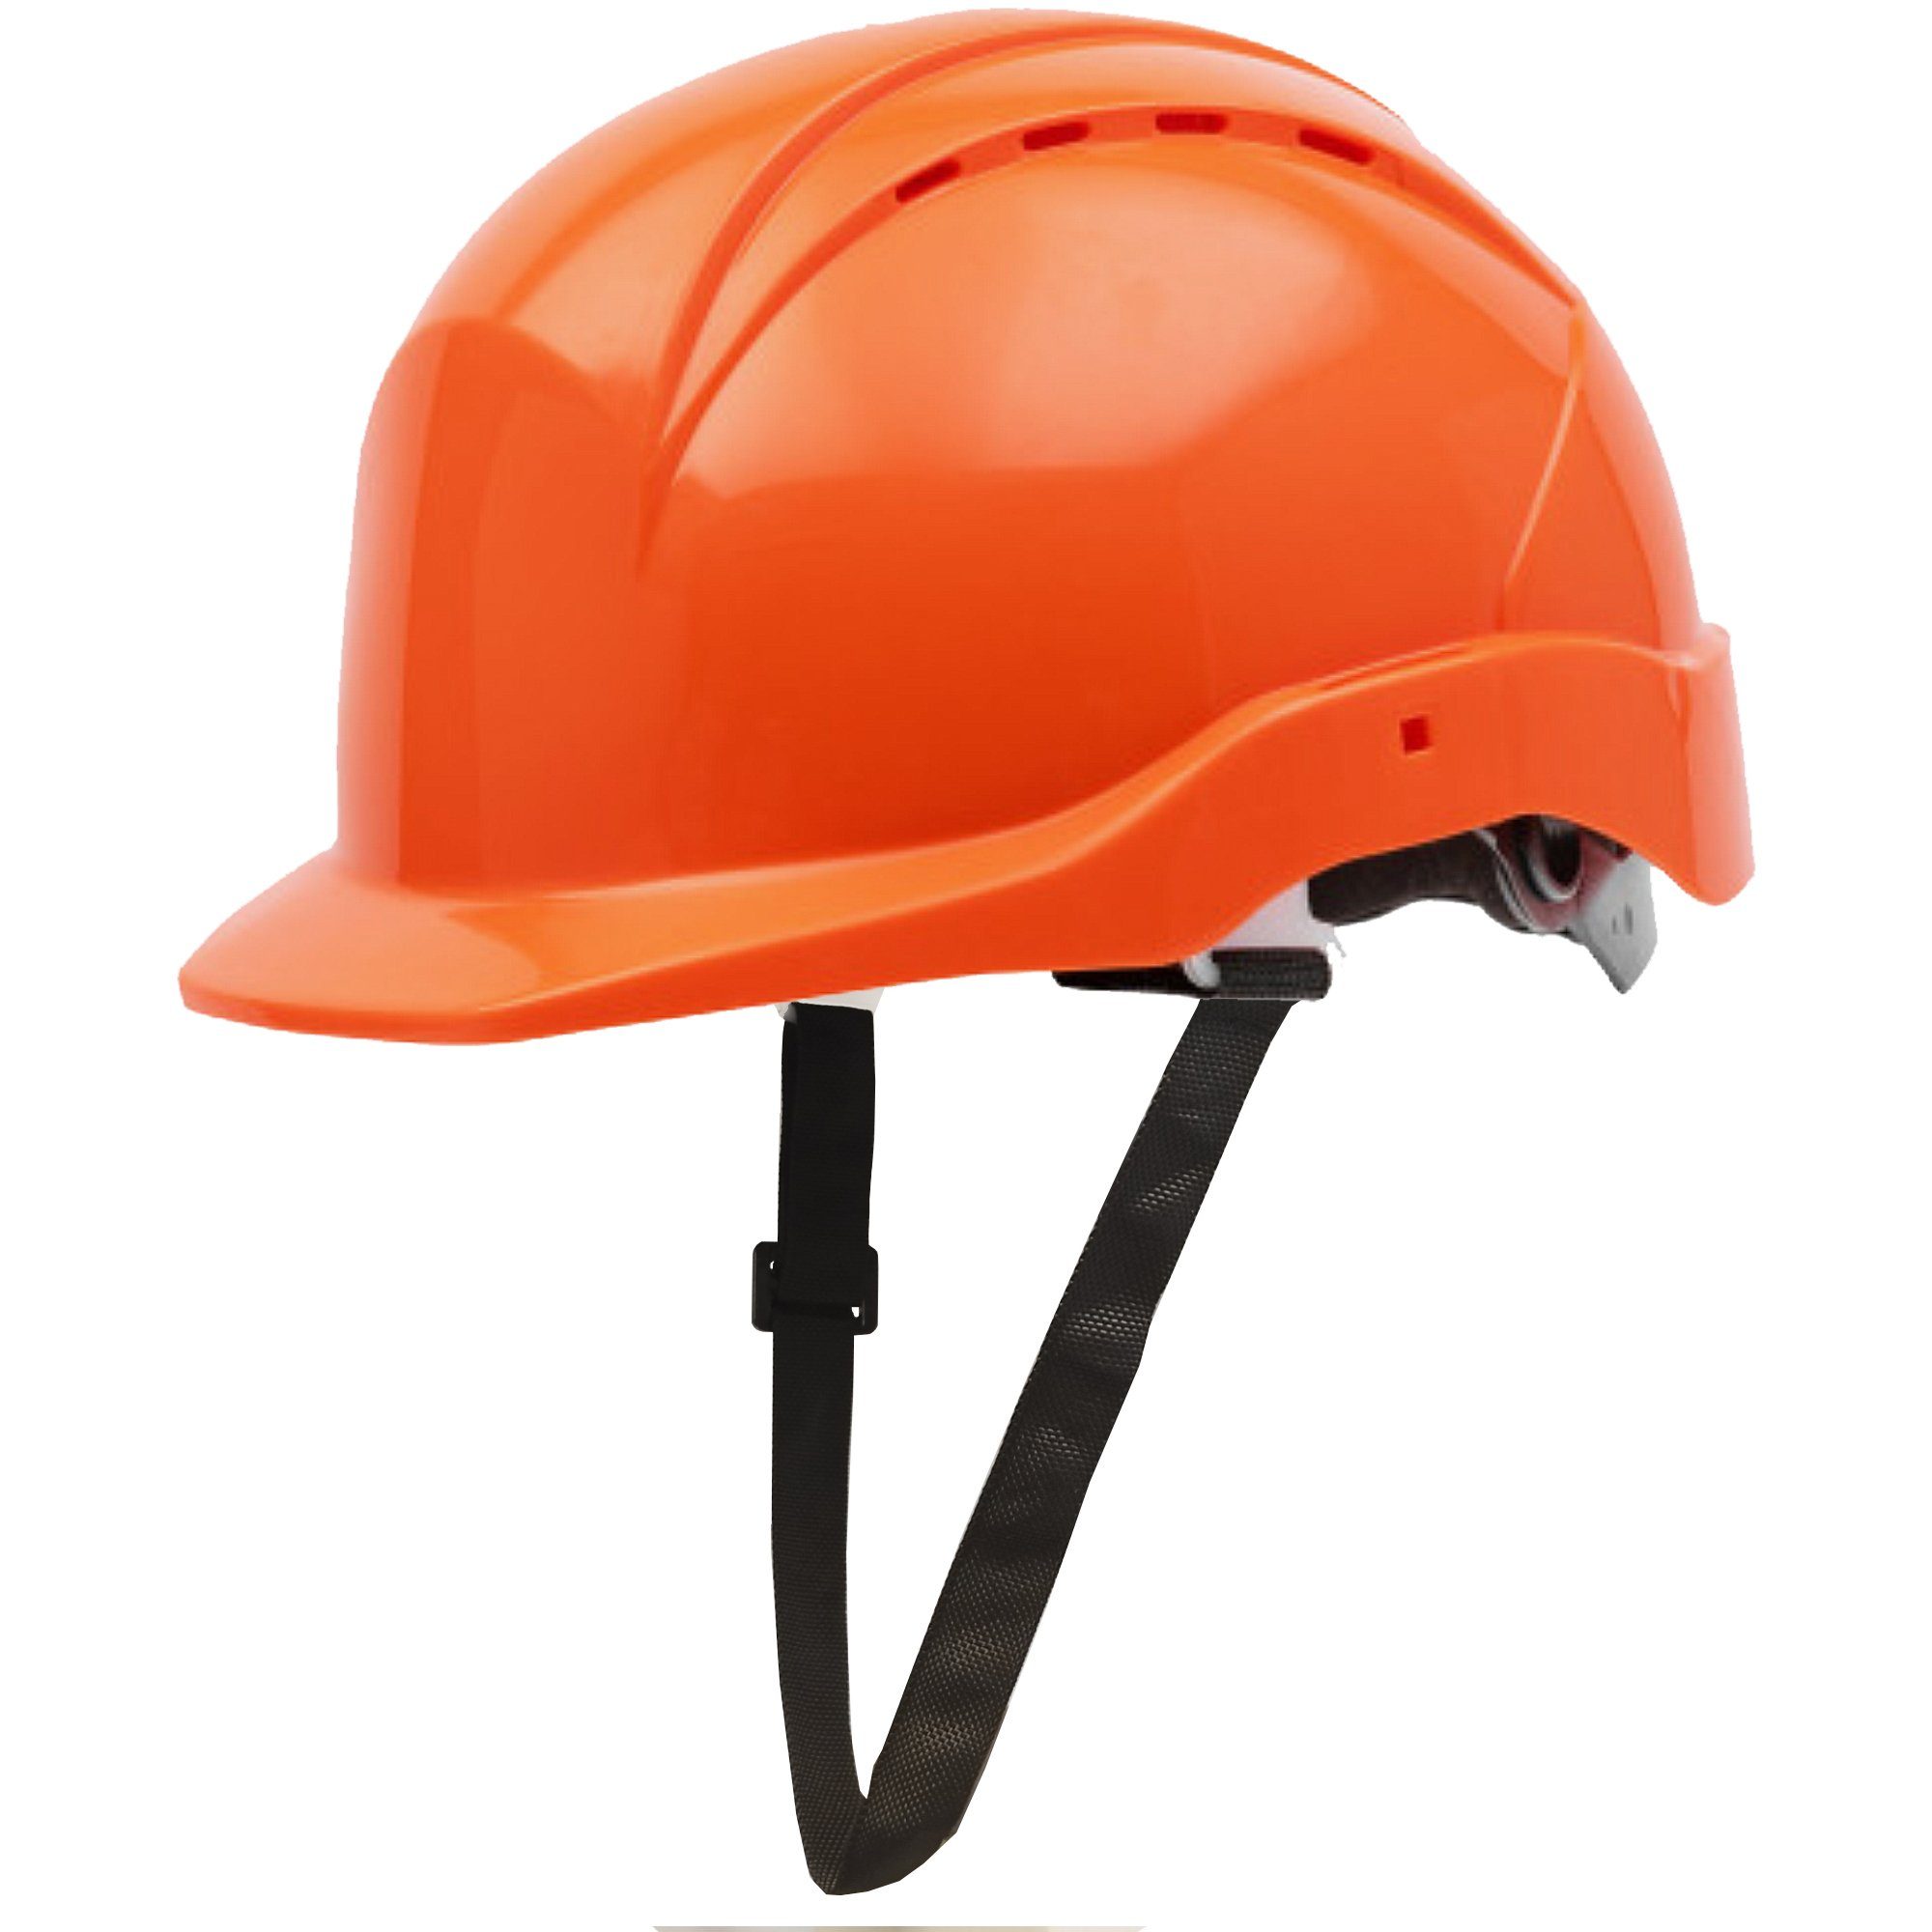 orange - Drehradsystem und 6-Punkt-Gurtband Drehradsystem GUARD 5 Sicherheitshelm (Art.22-950), Arbeitshelm mit